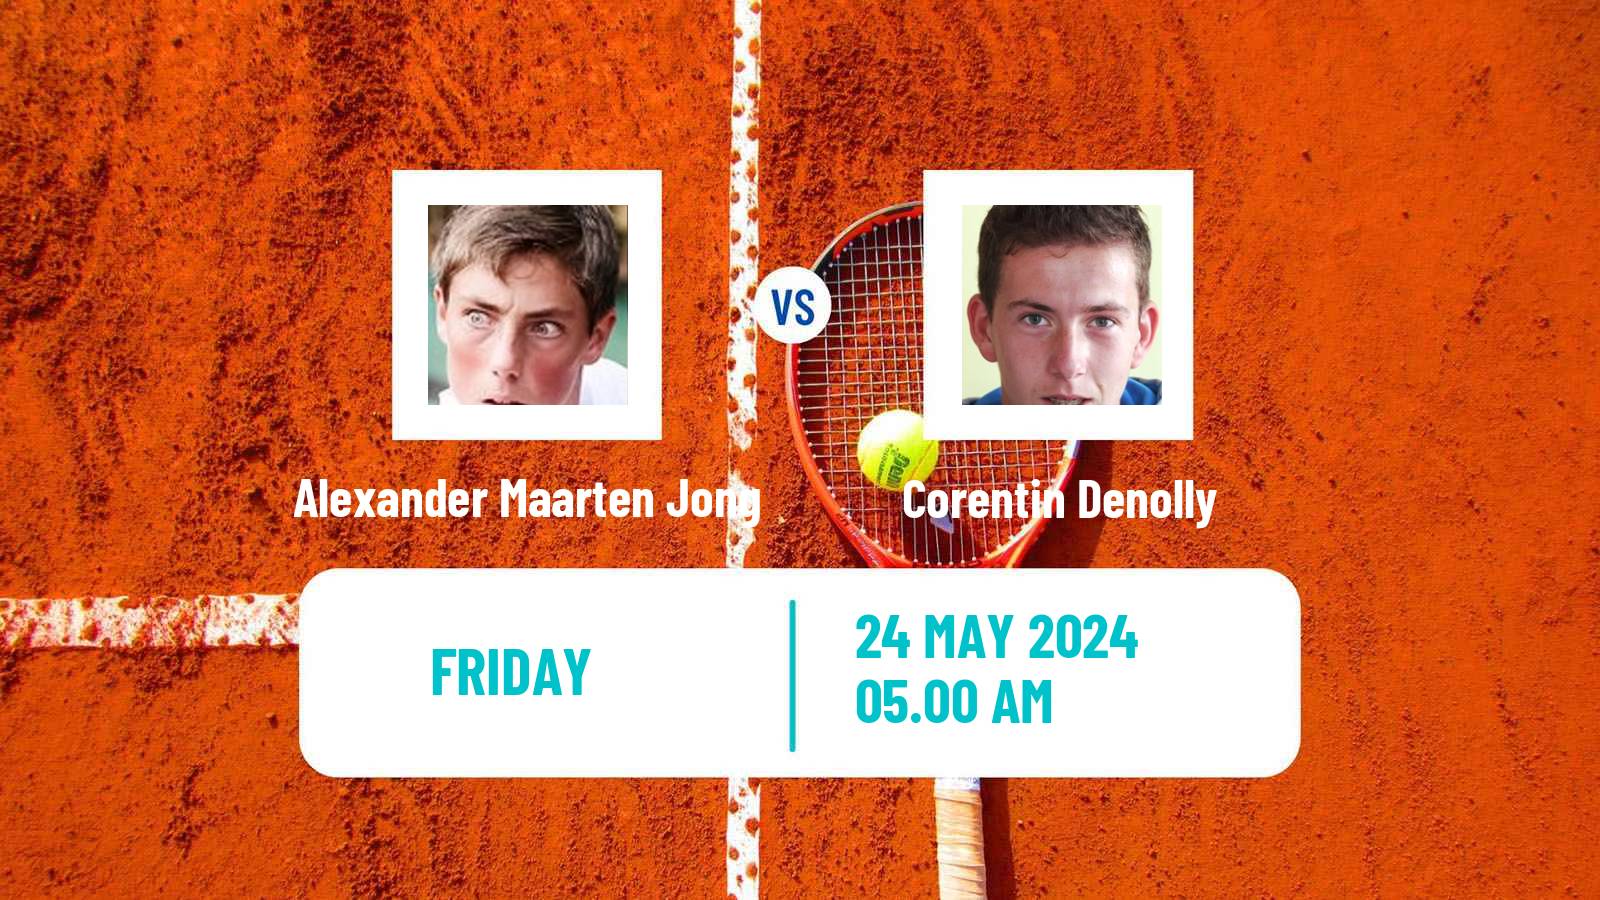 Tennis ITF M25 Deauville Men Alexander Maarten Jong - Corentin Denolly